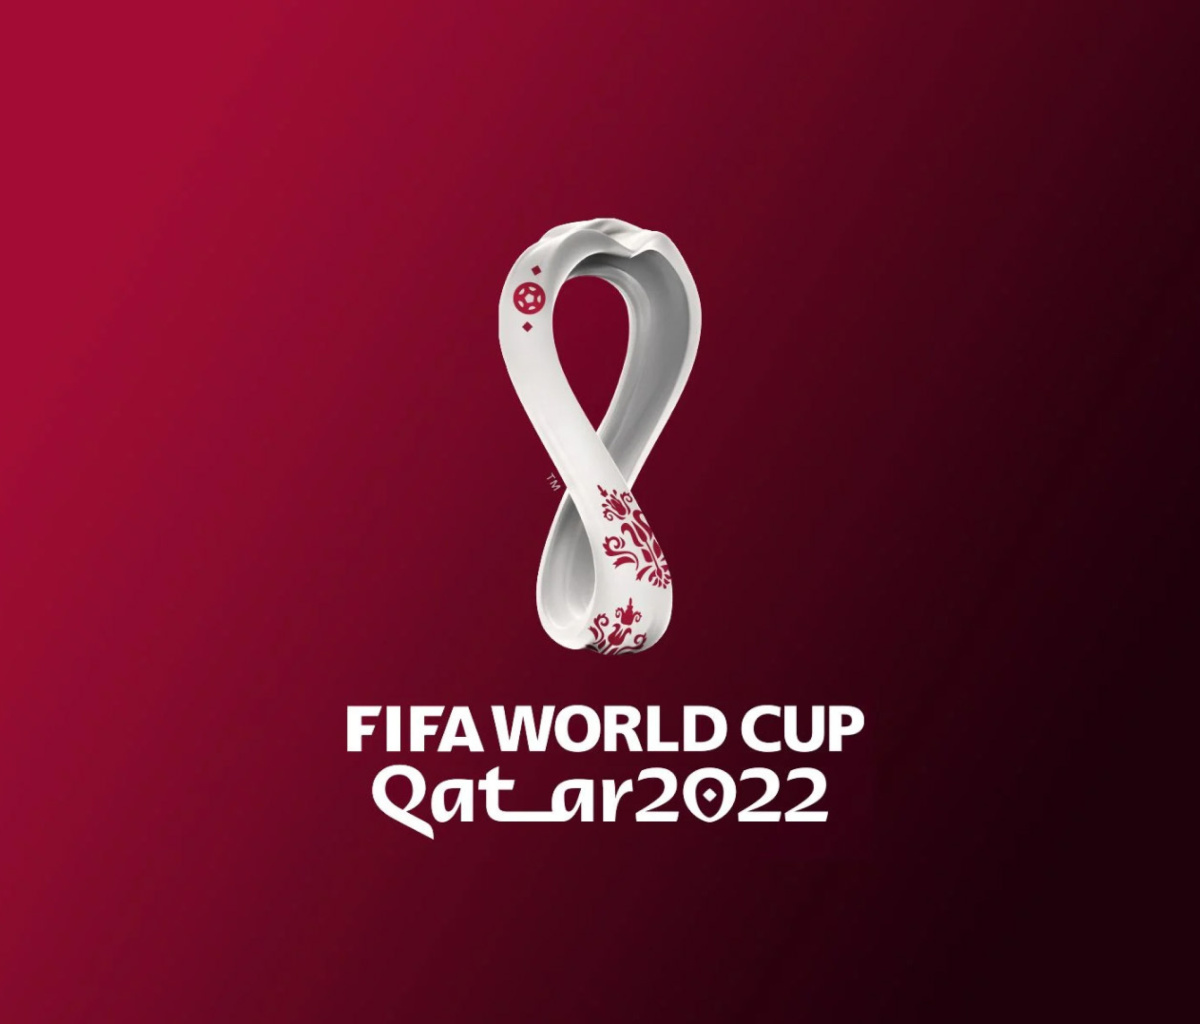 Das World Cup Qatar 2022 Wallpaper 1200x1024